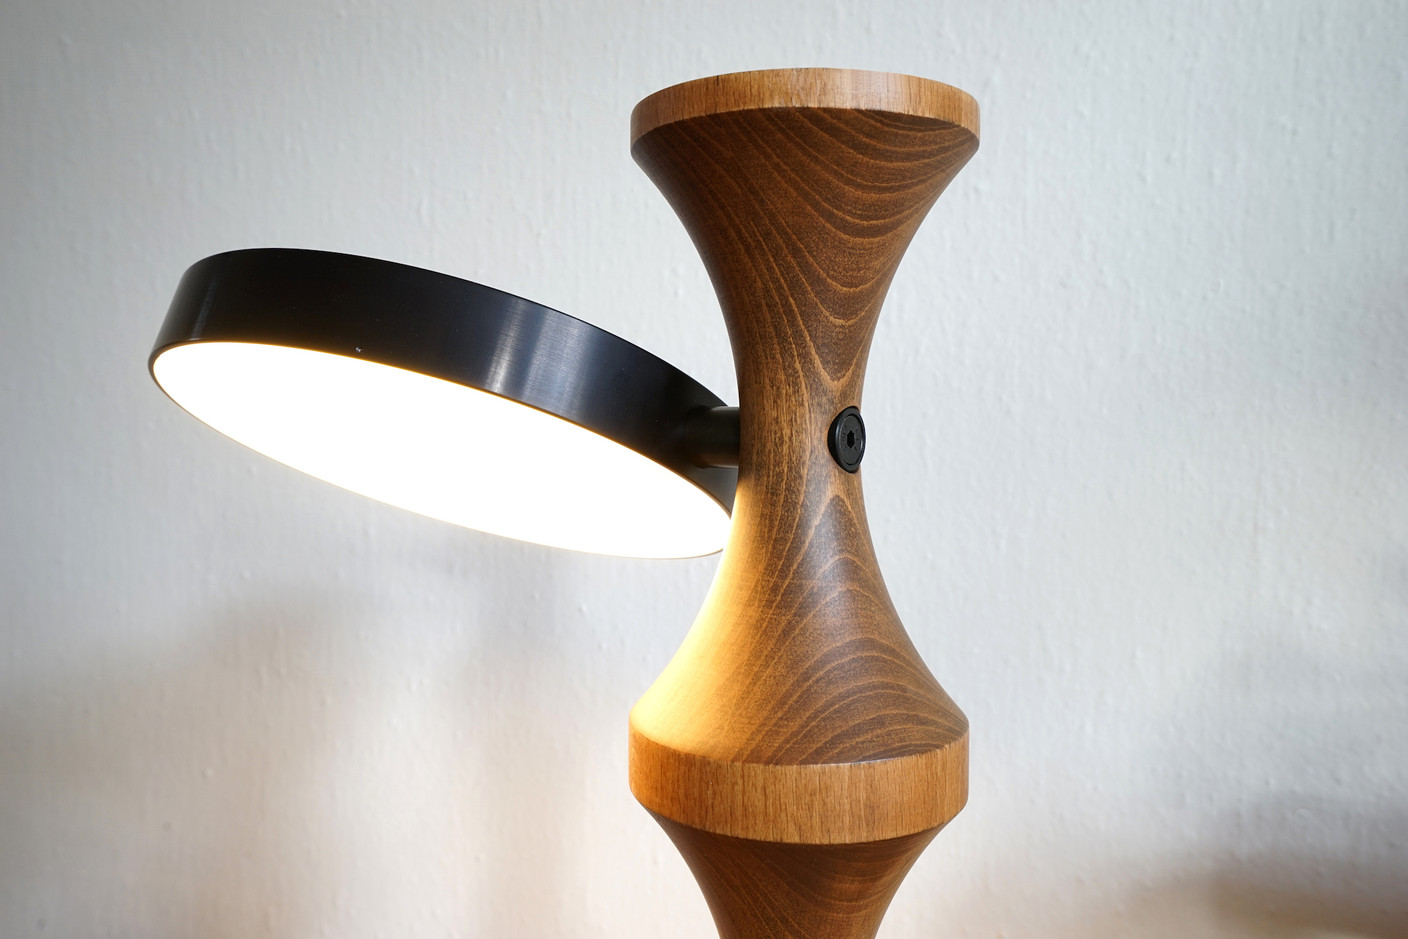 Le contraste des matériaux donne un caractère très contemporain à cette lampe.                          (Photo: Georges Zigrand)